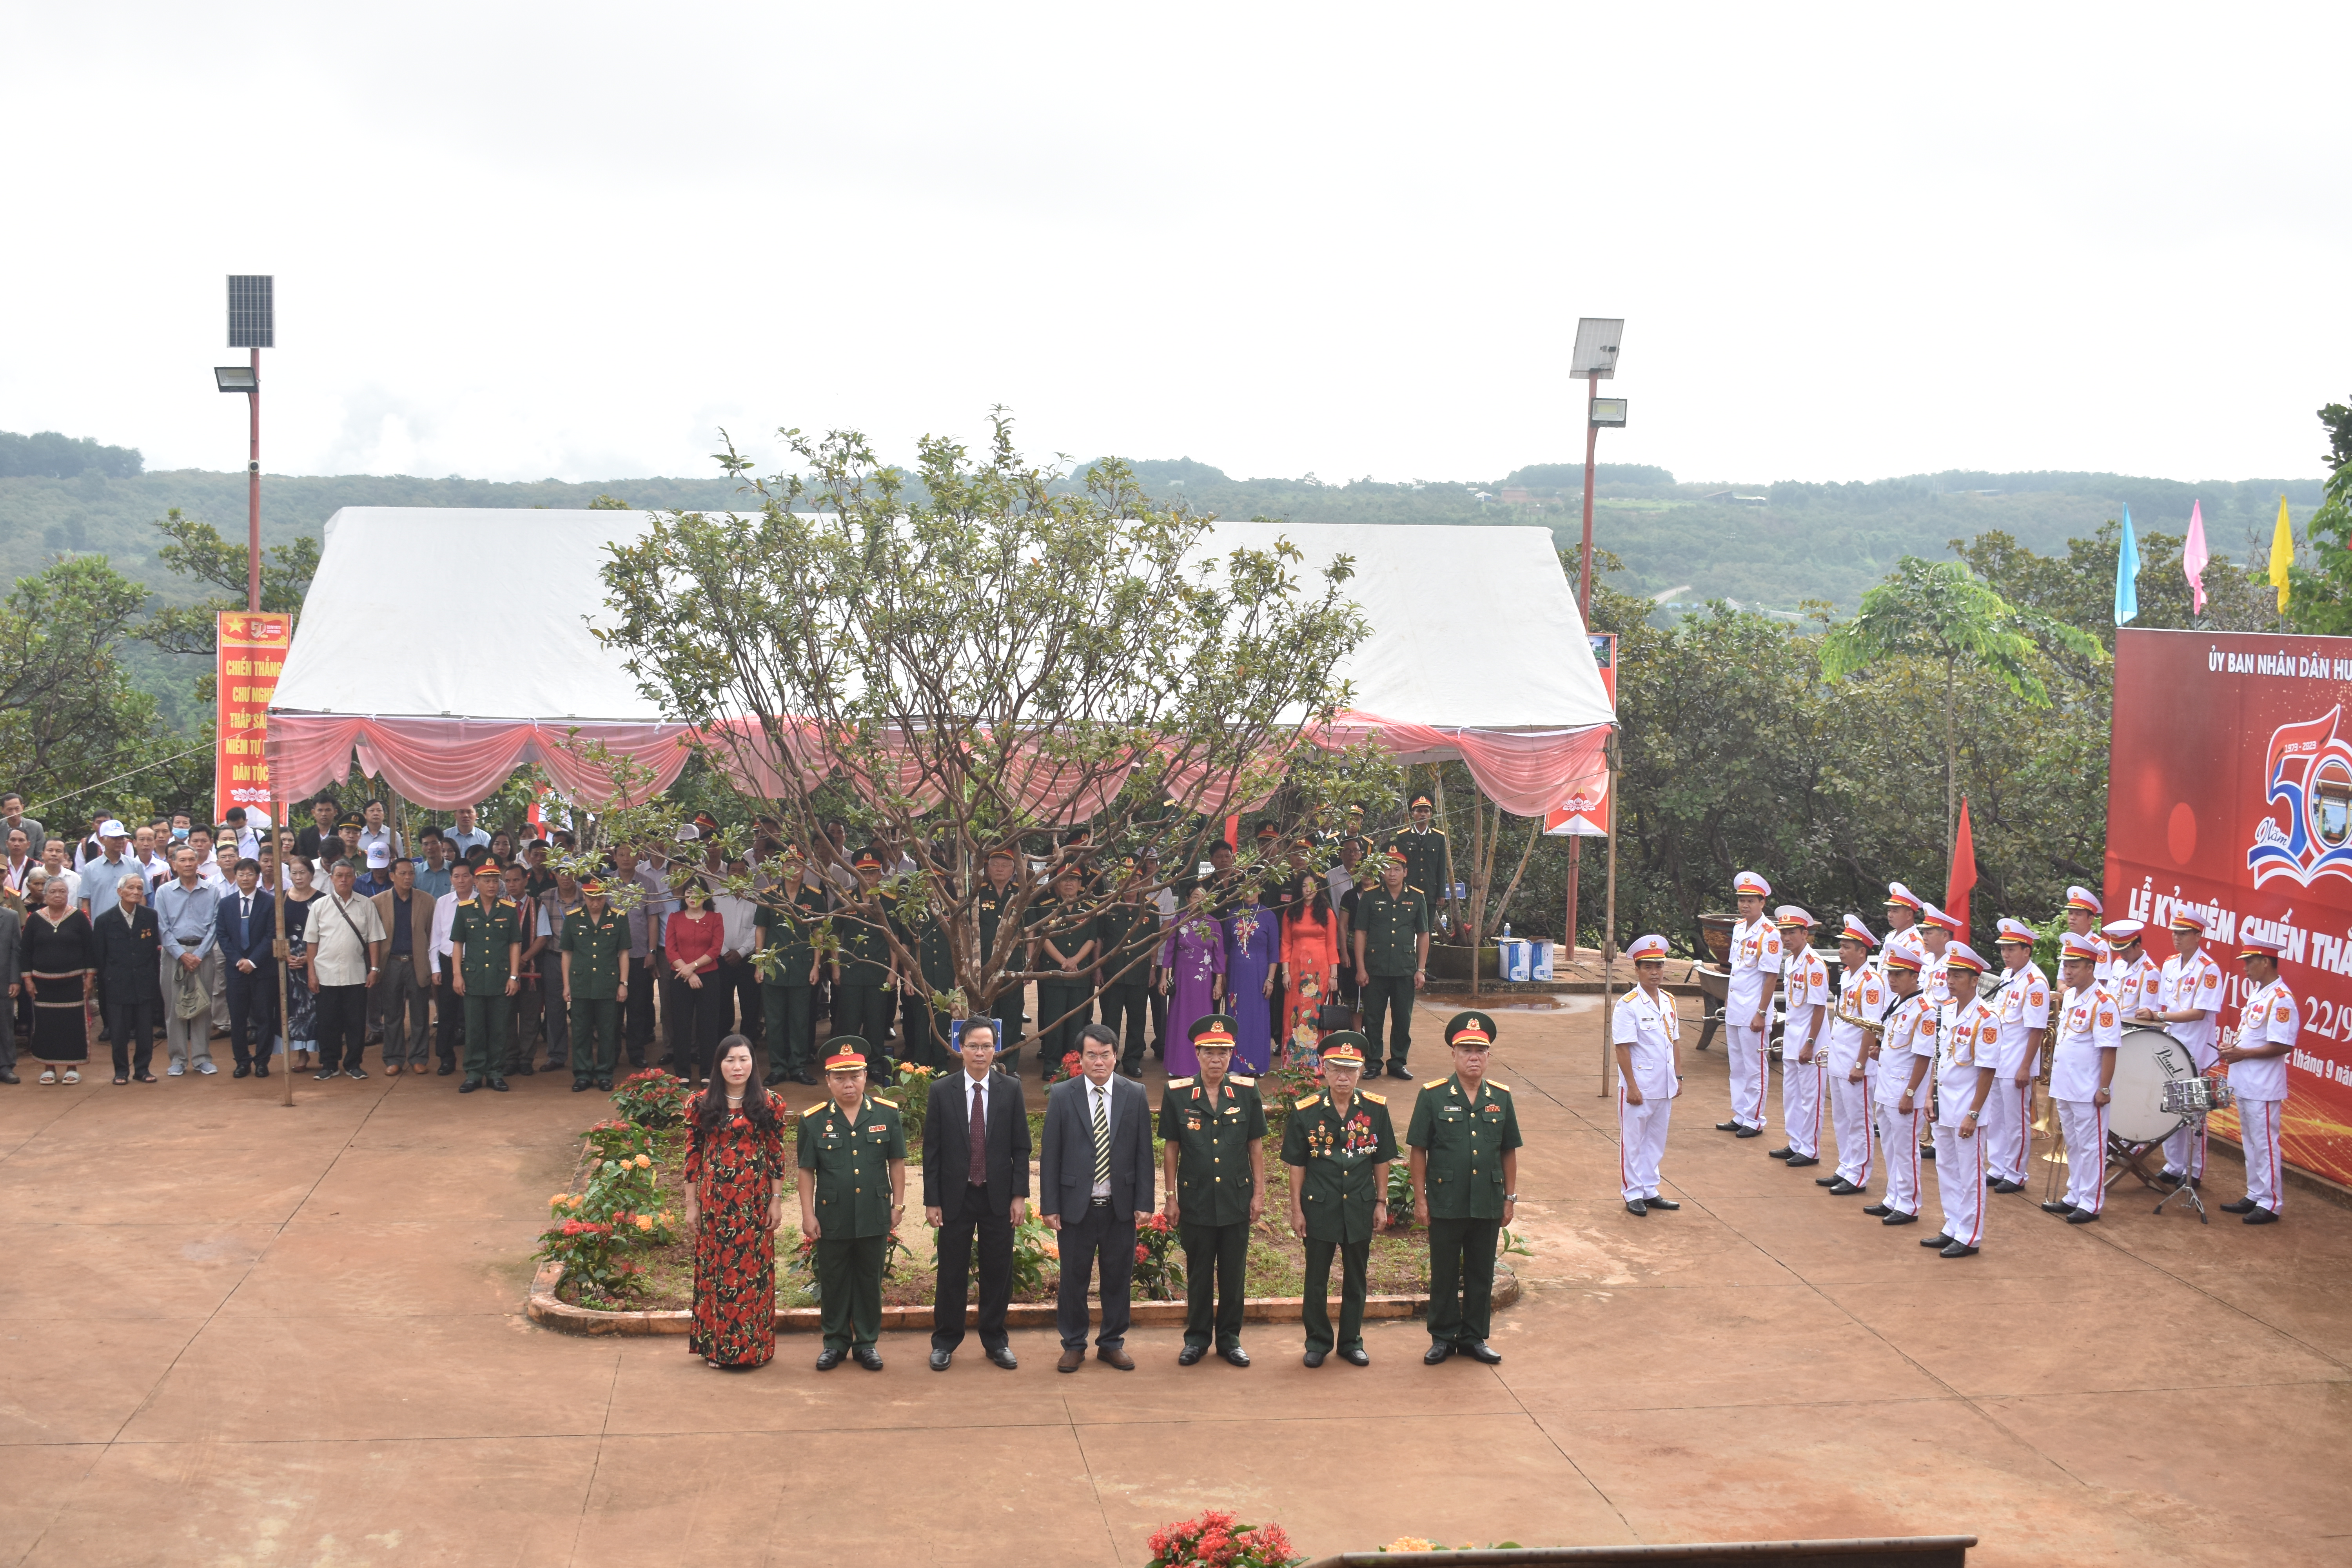 Article Huyện Ia Grai long trọng tổ chức Lễ kỷ niệm 50 năm  Chiến thắng Chư Nghé